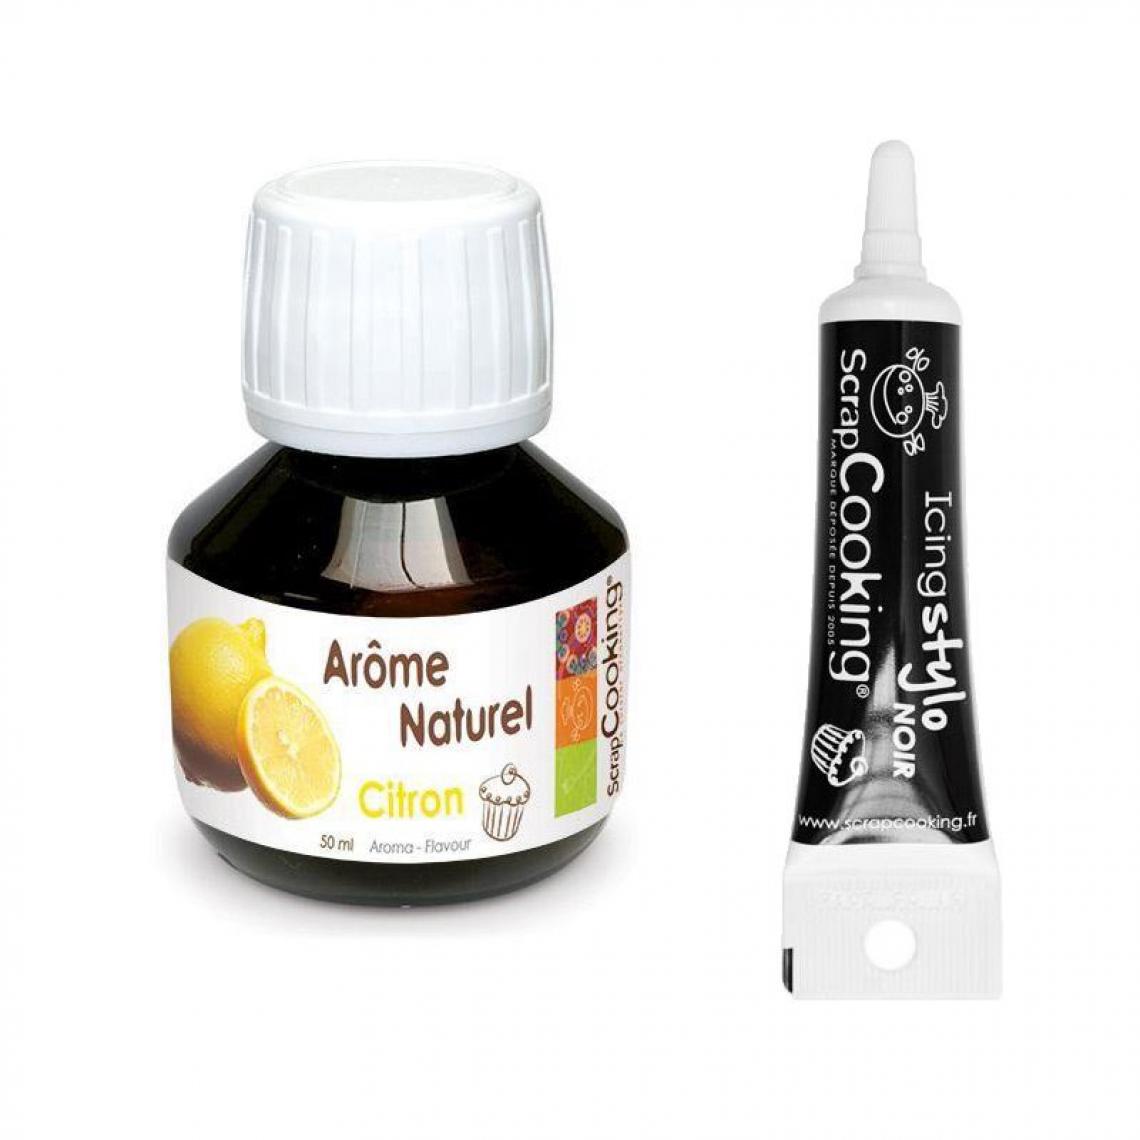 Scrapcooking - Arôme naturel citron 50 ml + Stylo de glaçage noir - Kits créatifs